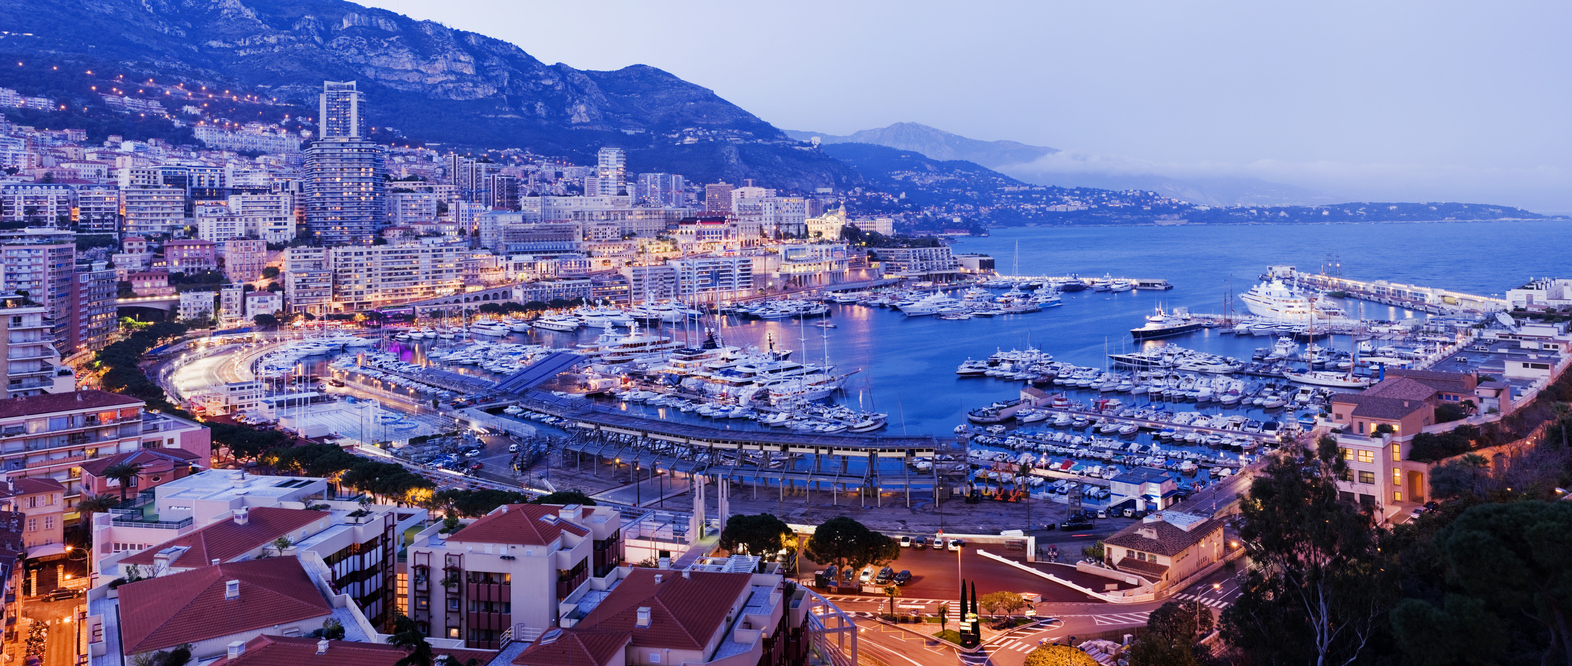 Monte Carlo - Monaco City